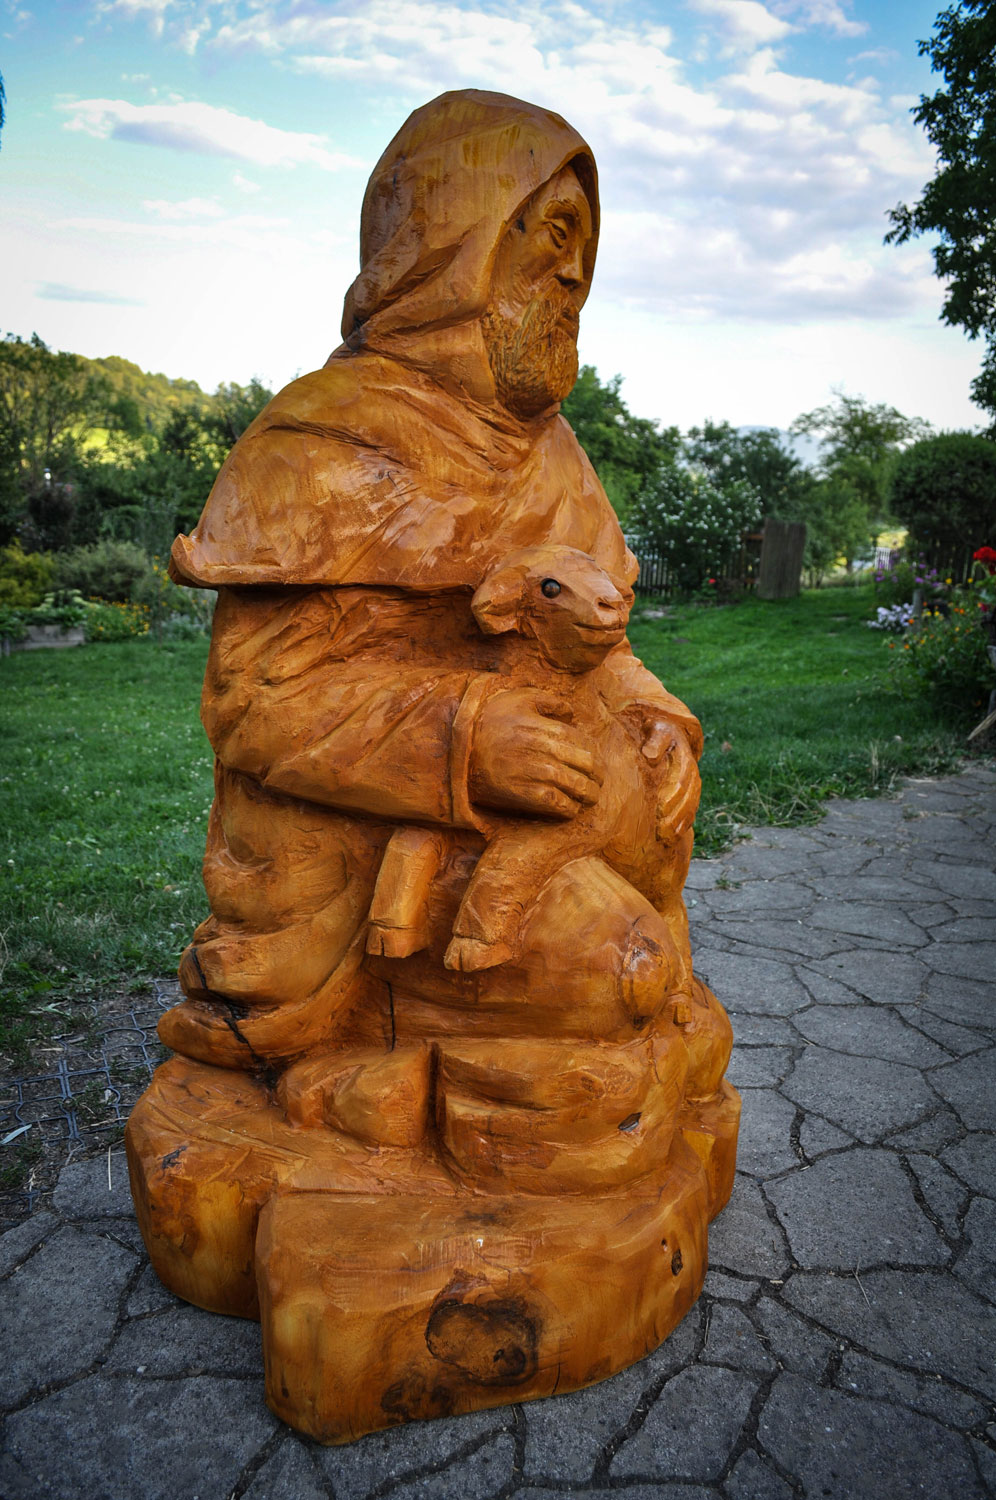 drevorezba-vyrezavani-carving-wood-drevo-socha-figura-betlem_pastyr-radekzdrazil-20220815-03